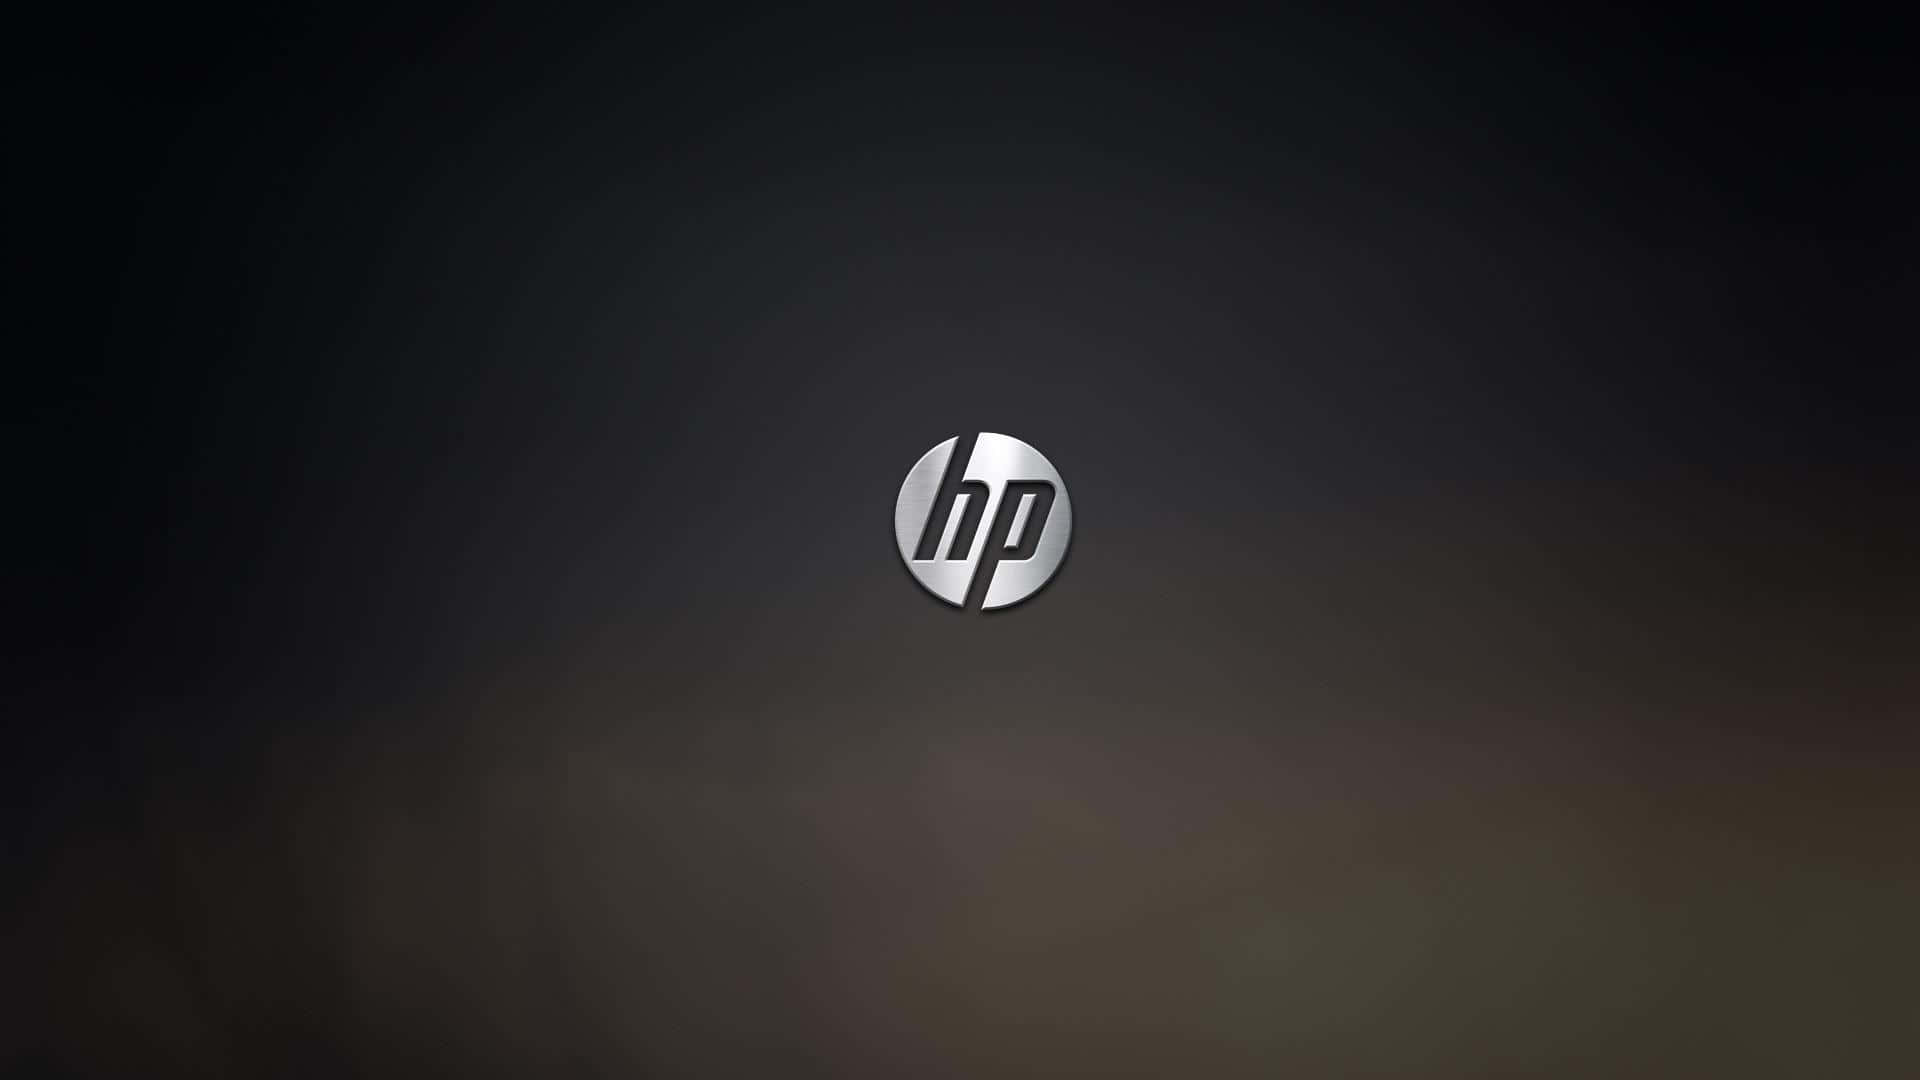 Hp Logo On A Dark Background